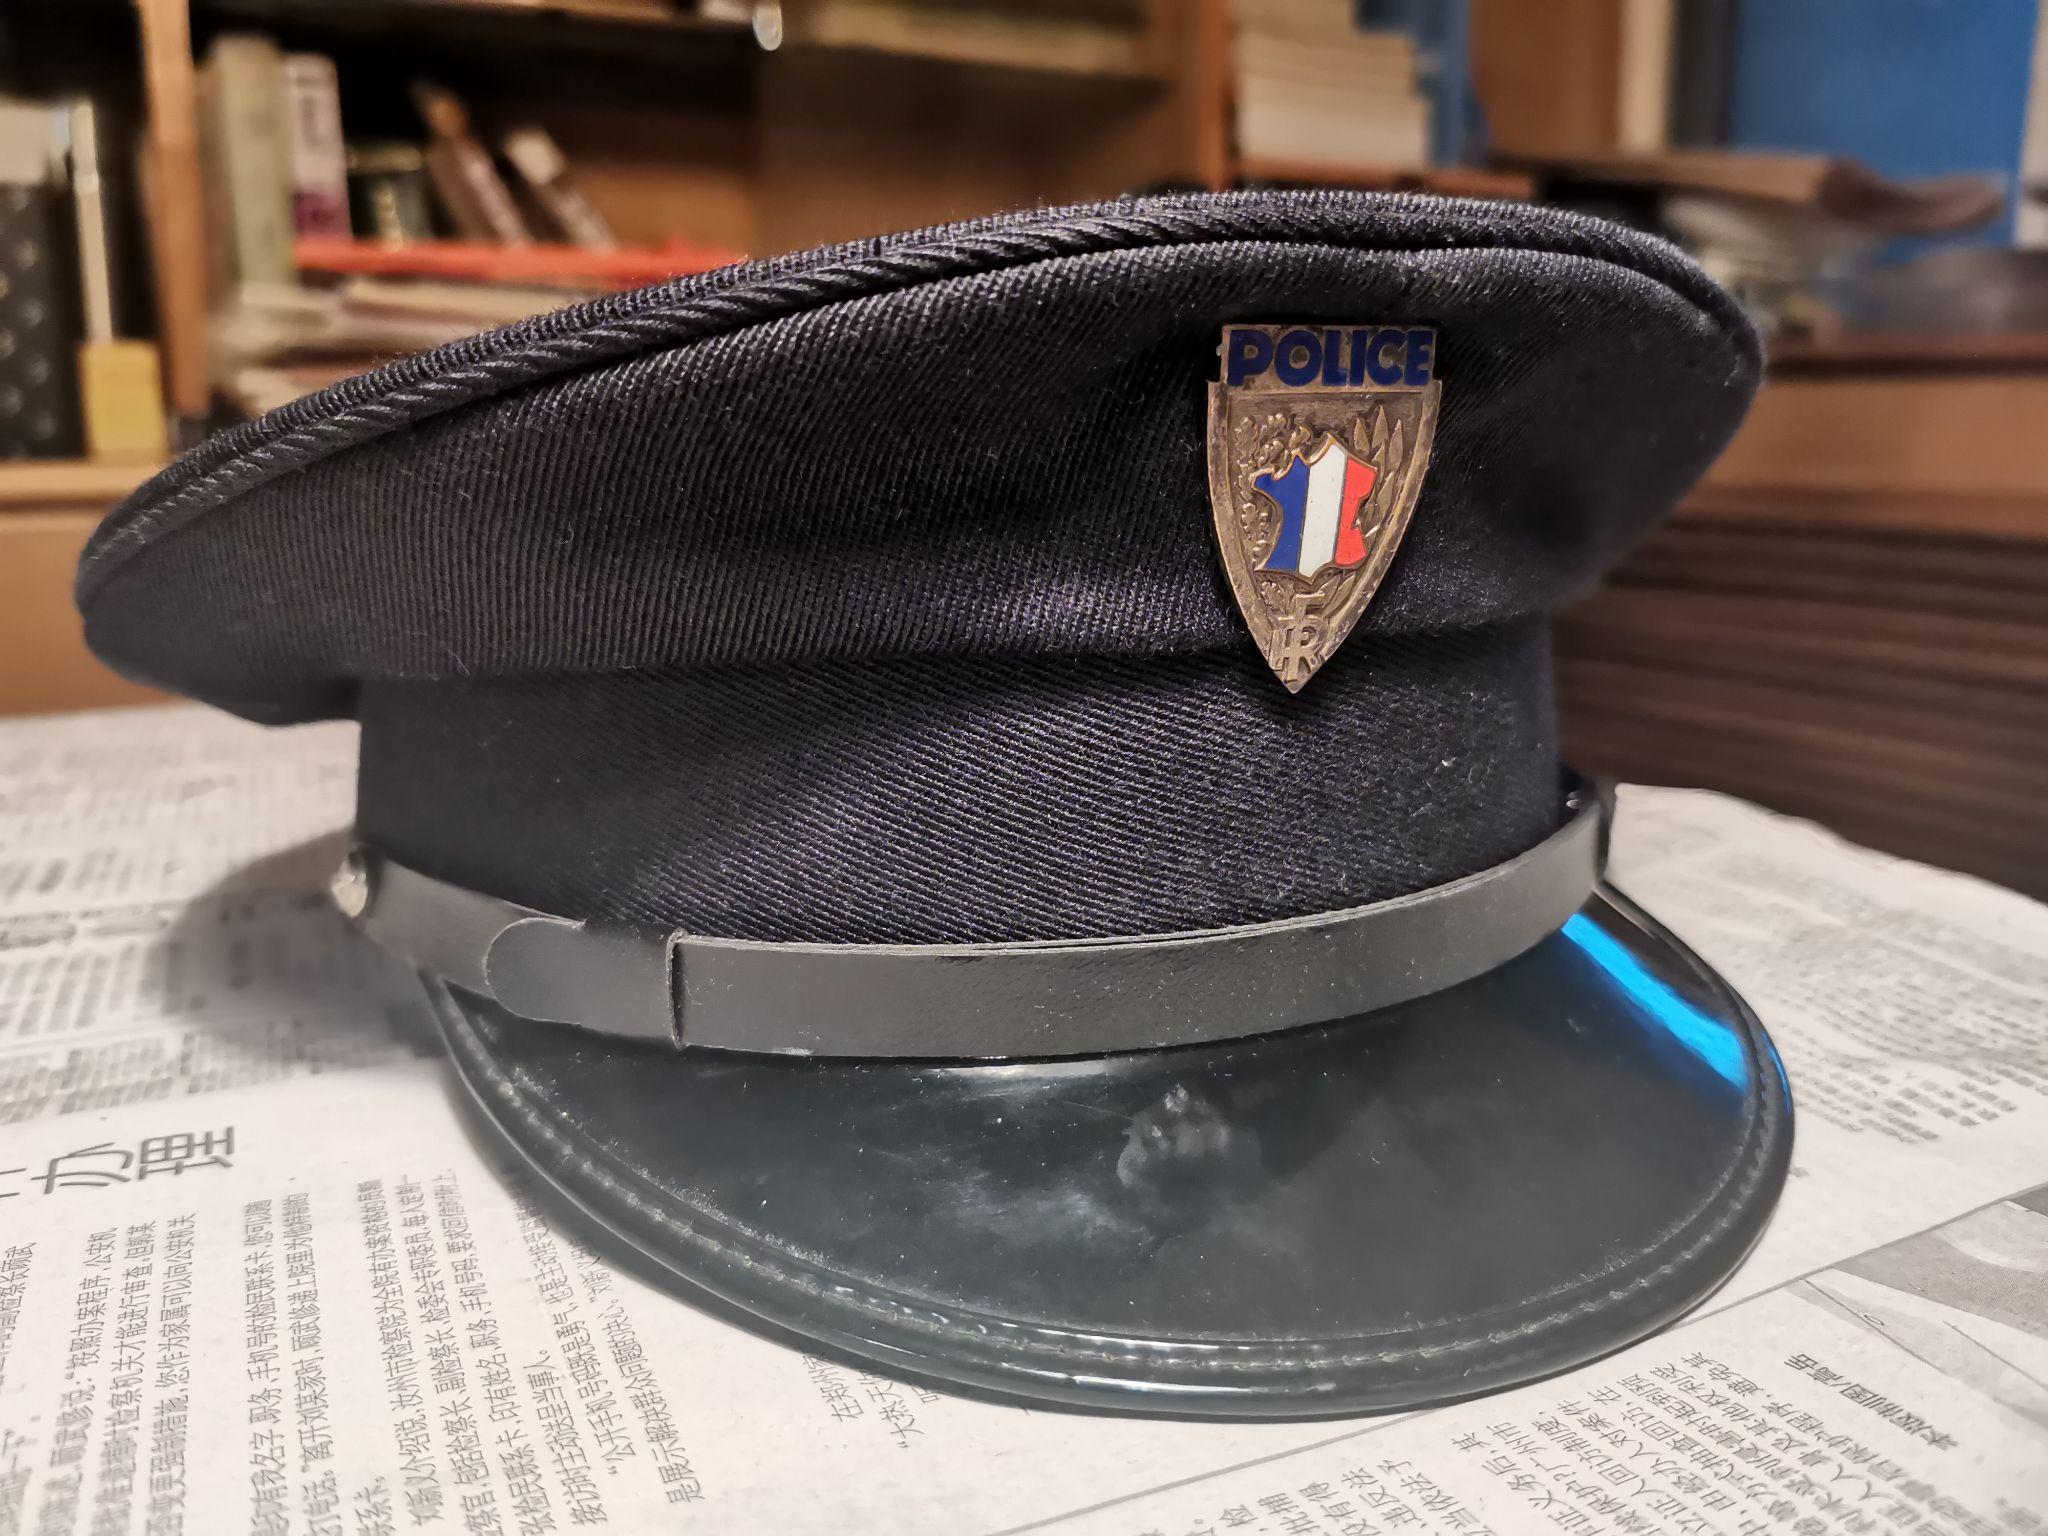 警帽故事4浪漫法兰西的警察体系